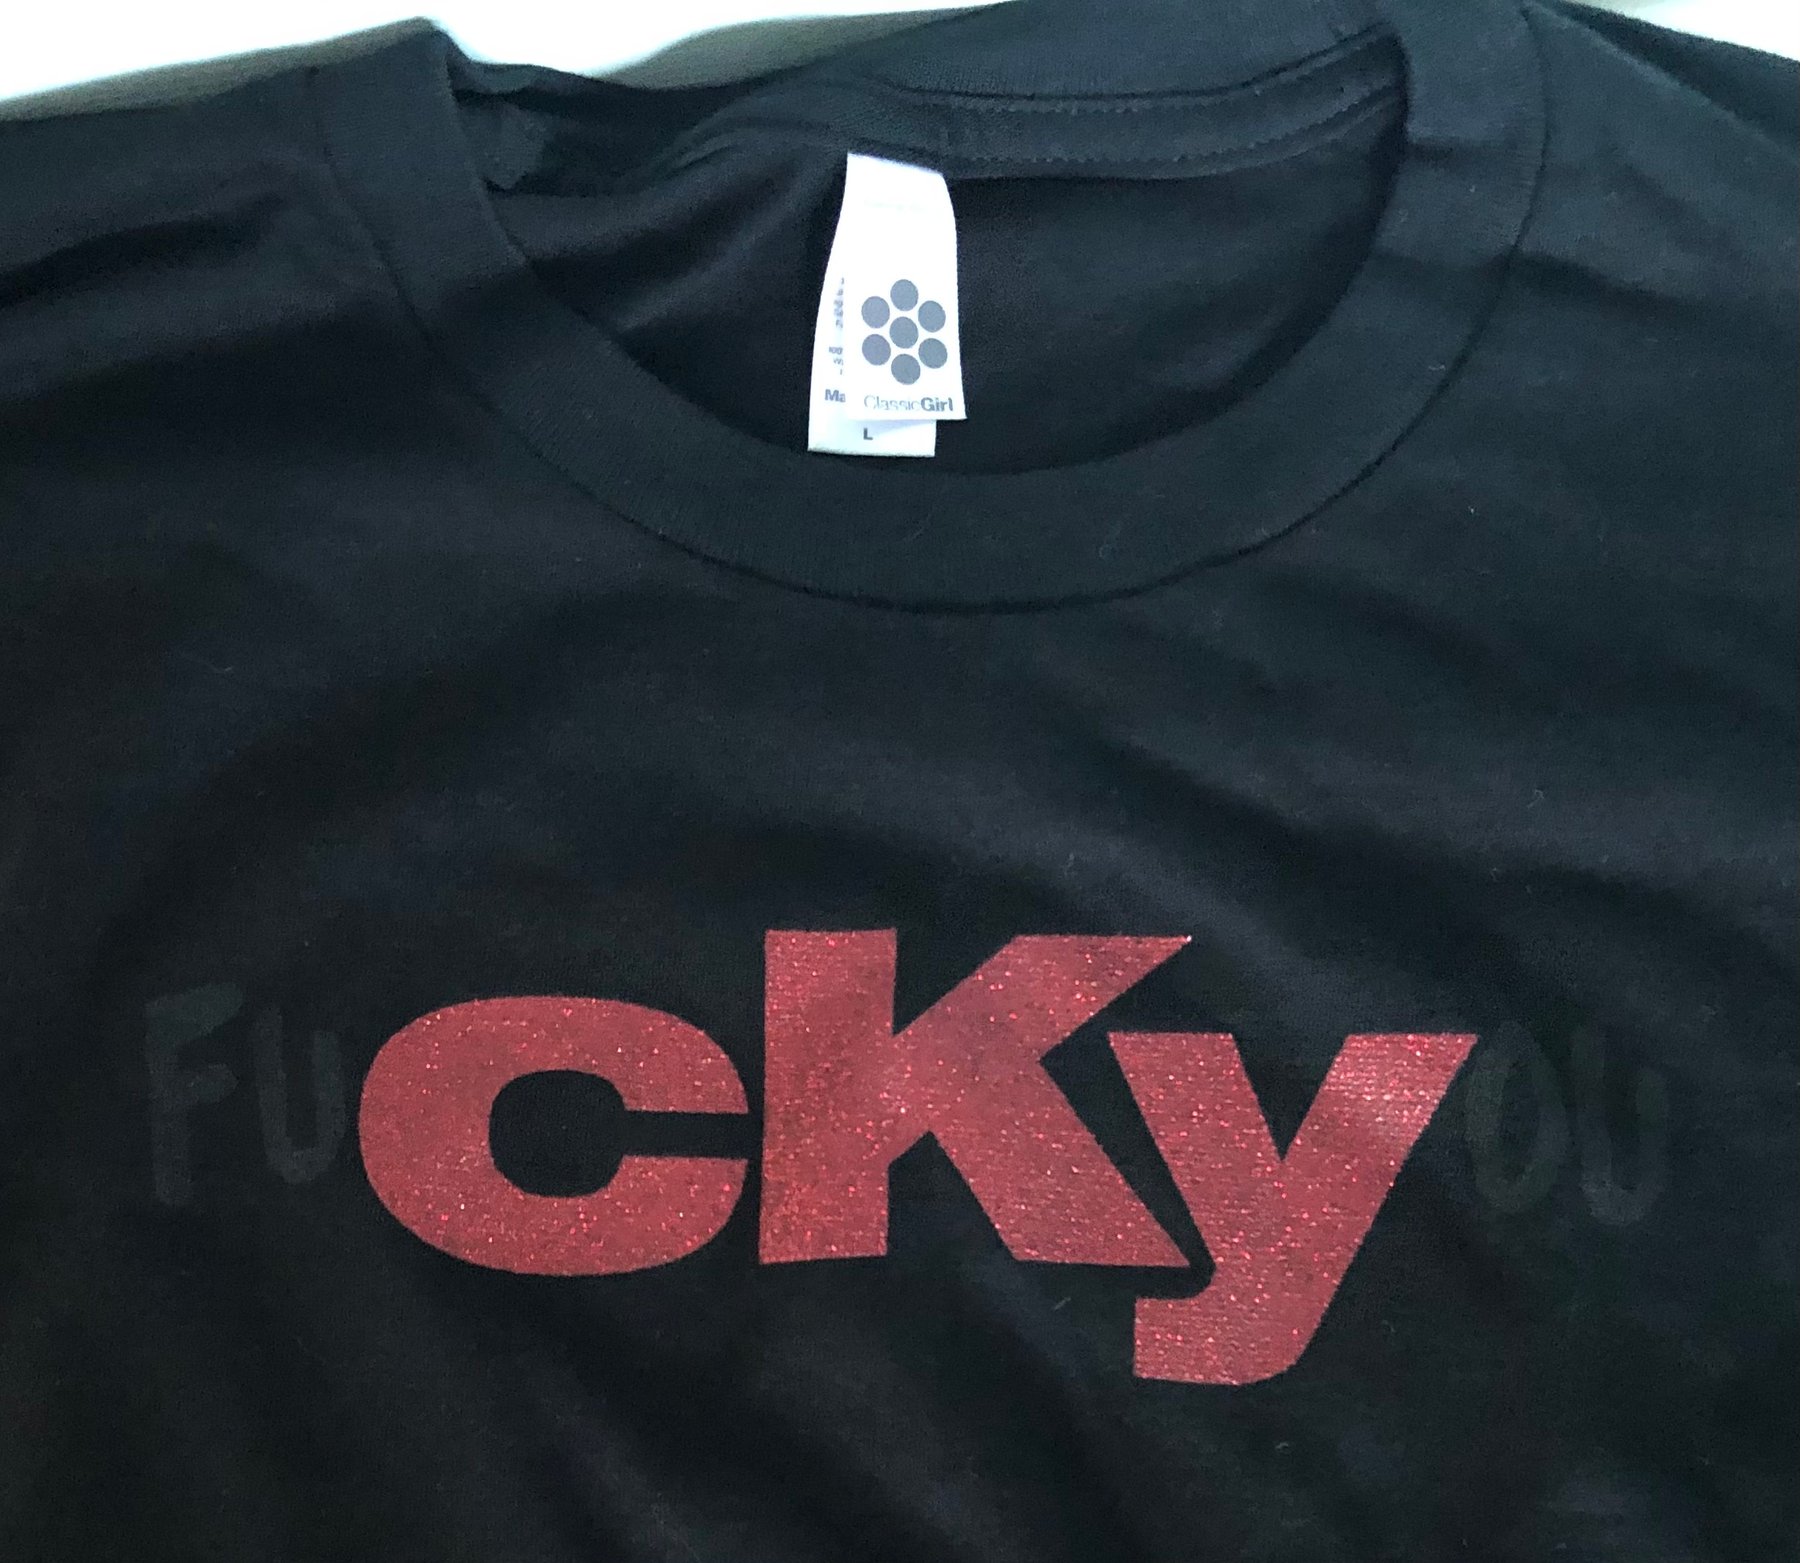 CKY — GIRLS RED SPARKLE fuCKYou